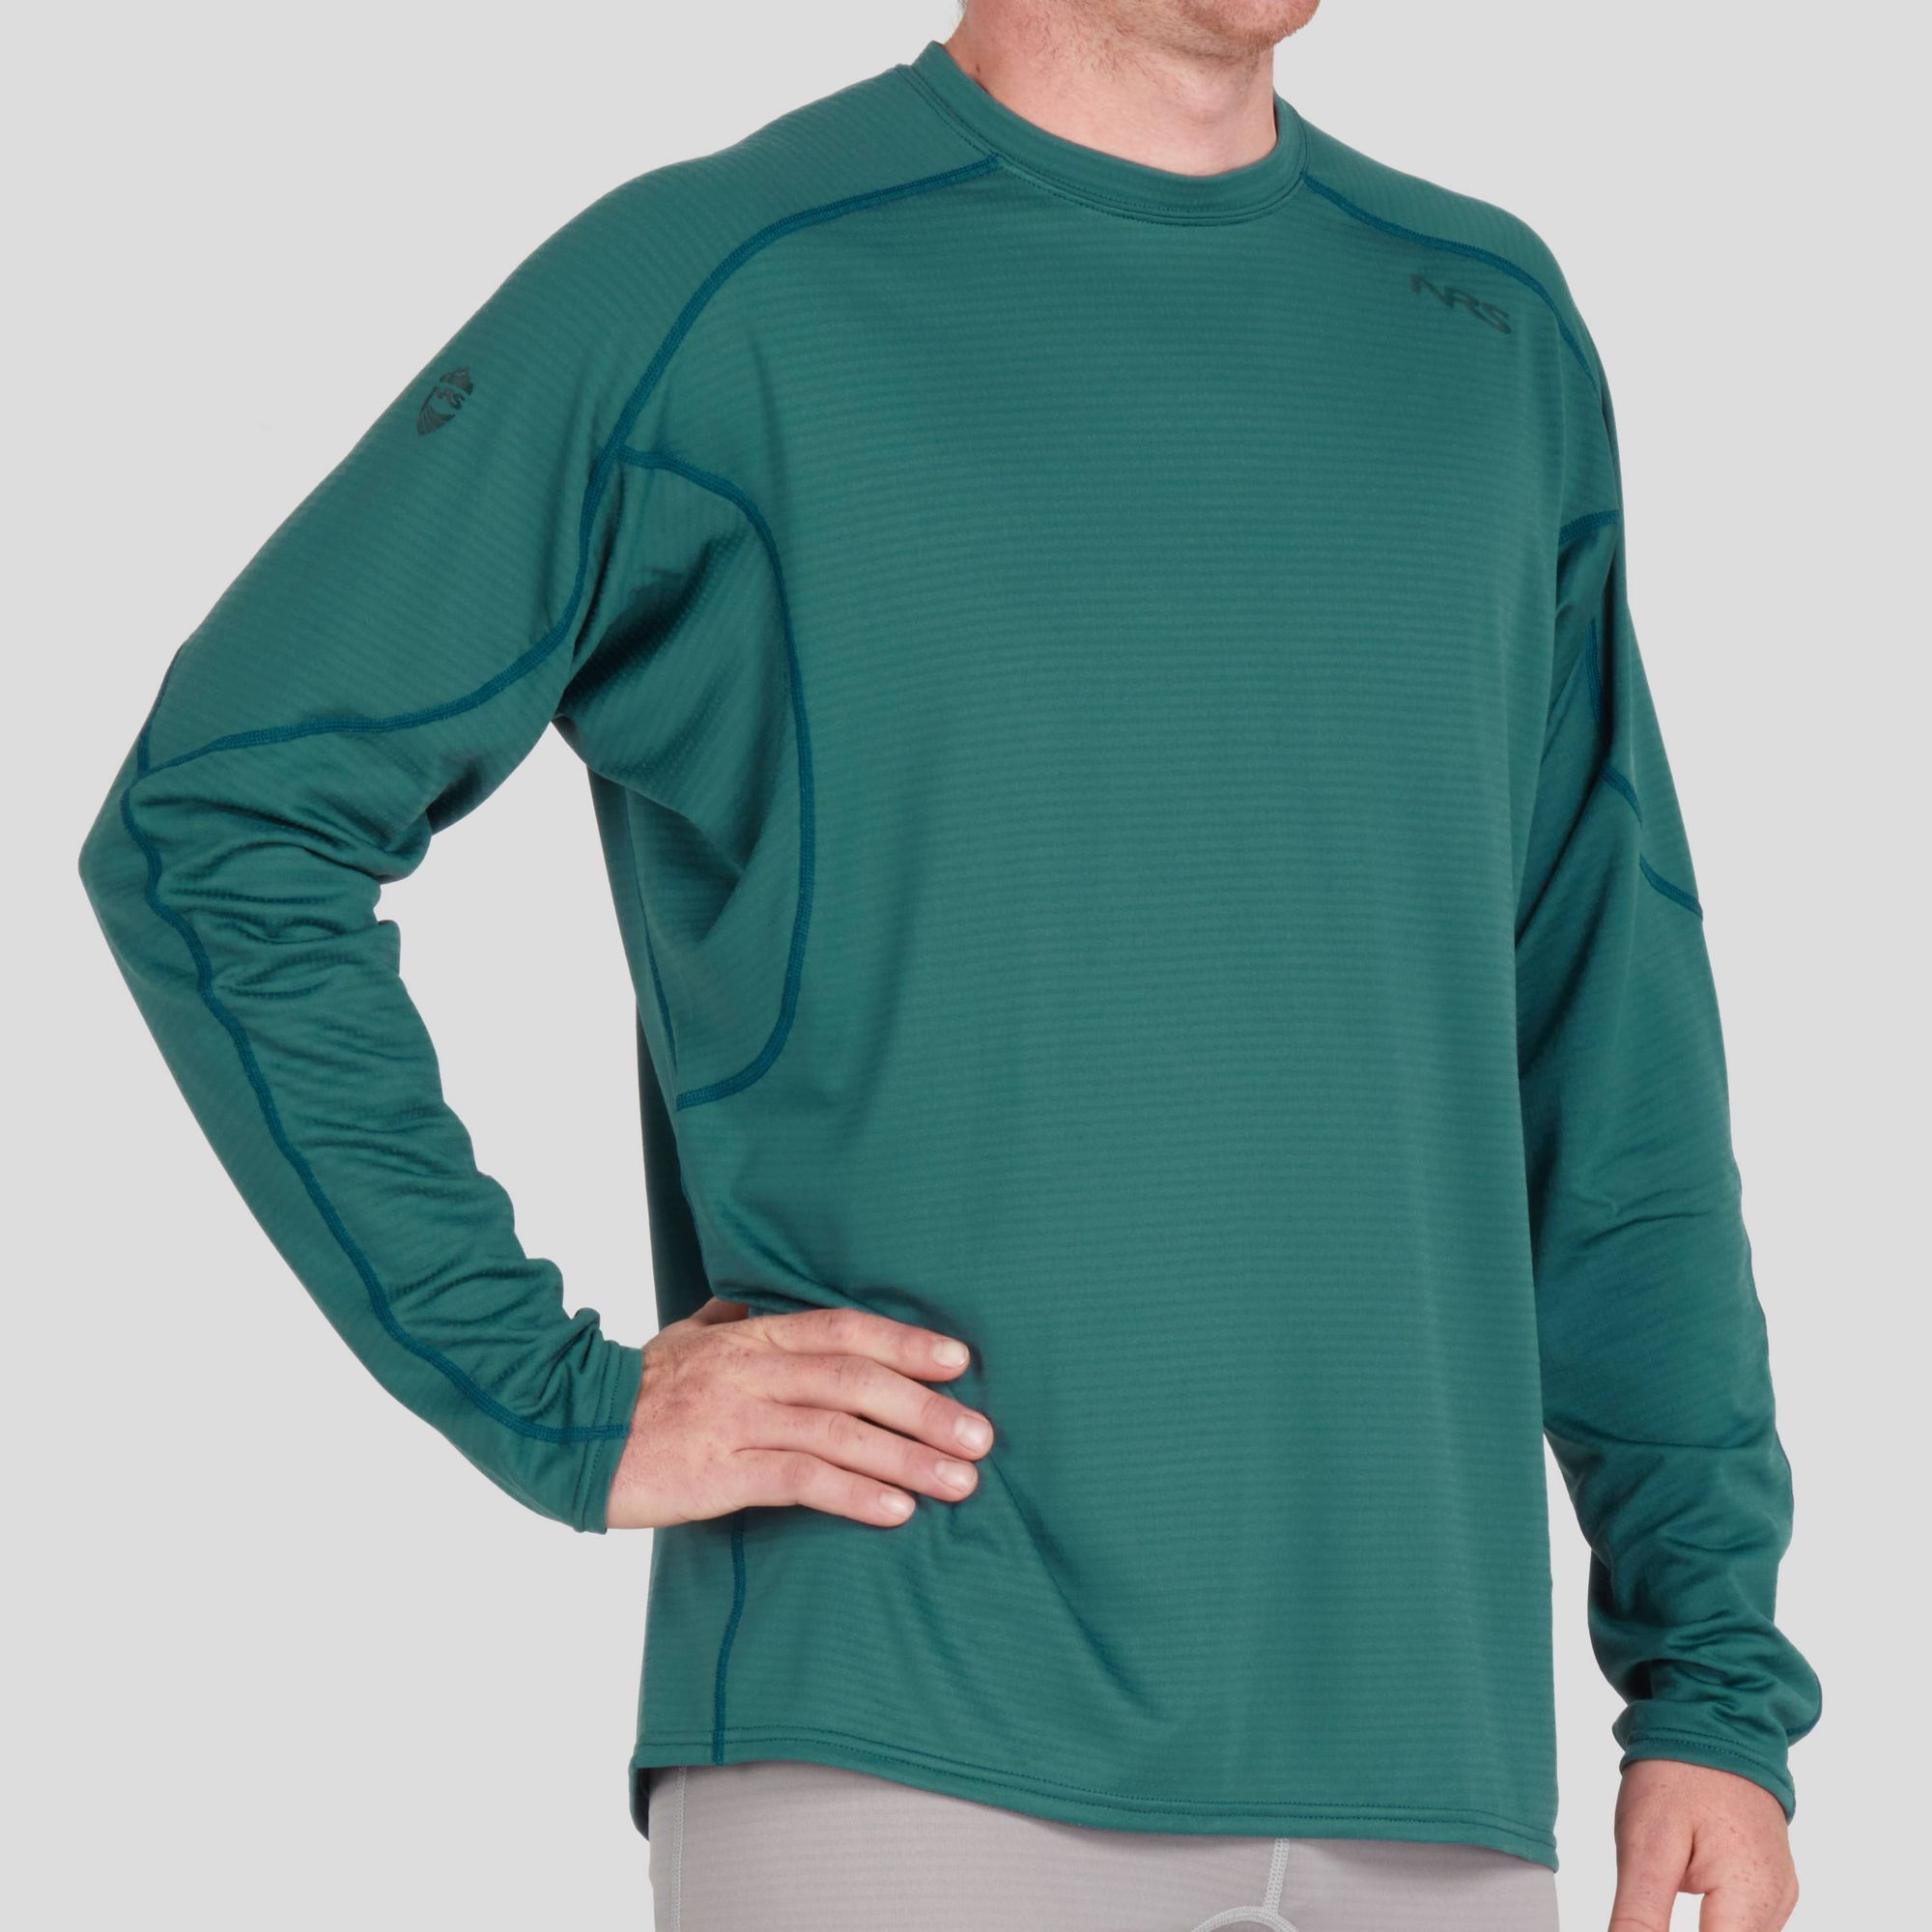 NRS Men's Lightweight Shirt Fleece Pullover Long Sleeve